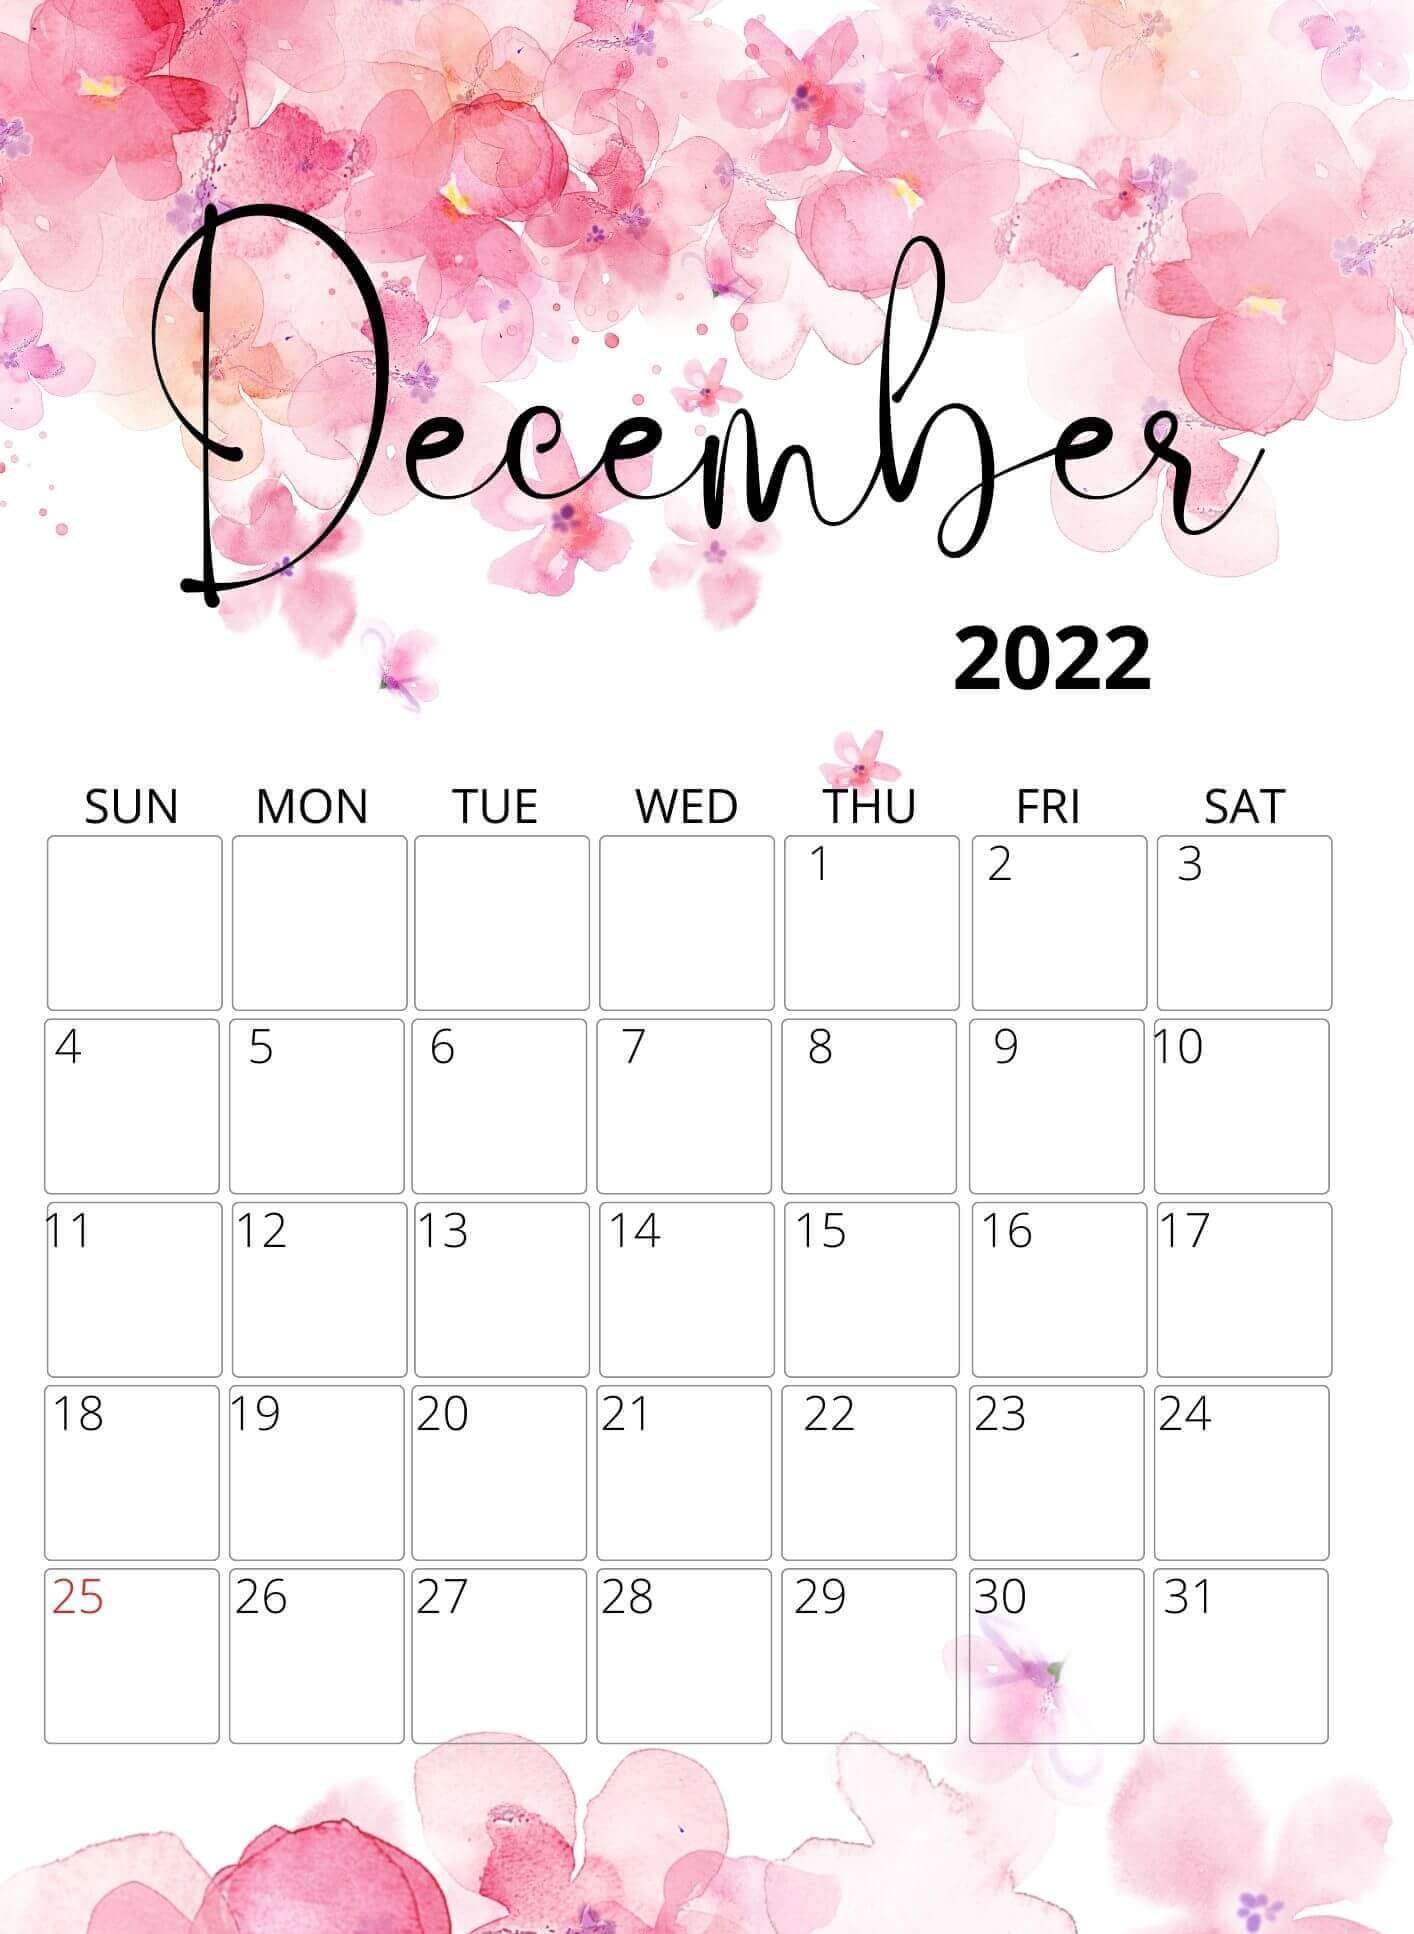 December 2022 Water color Floral Calendar